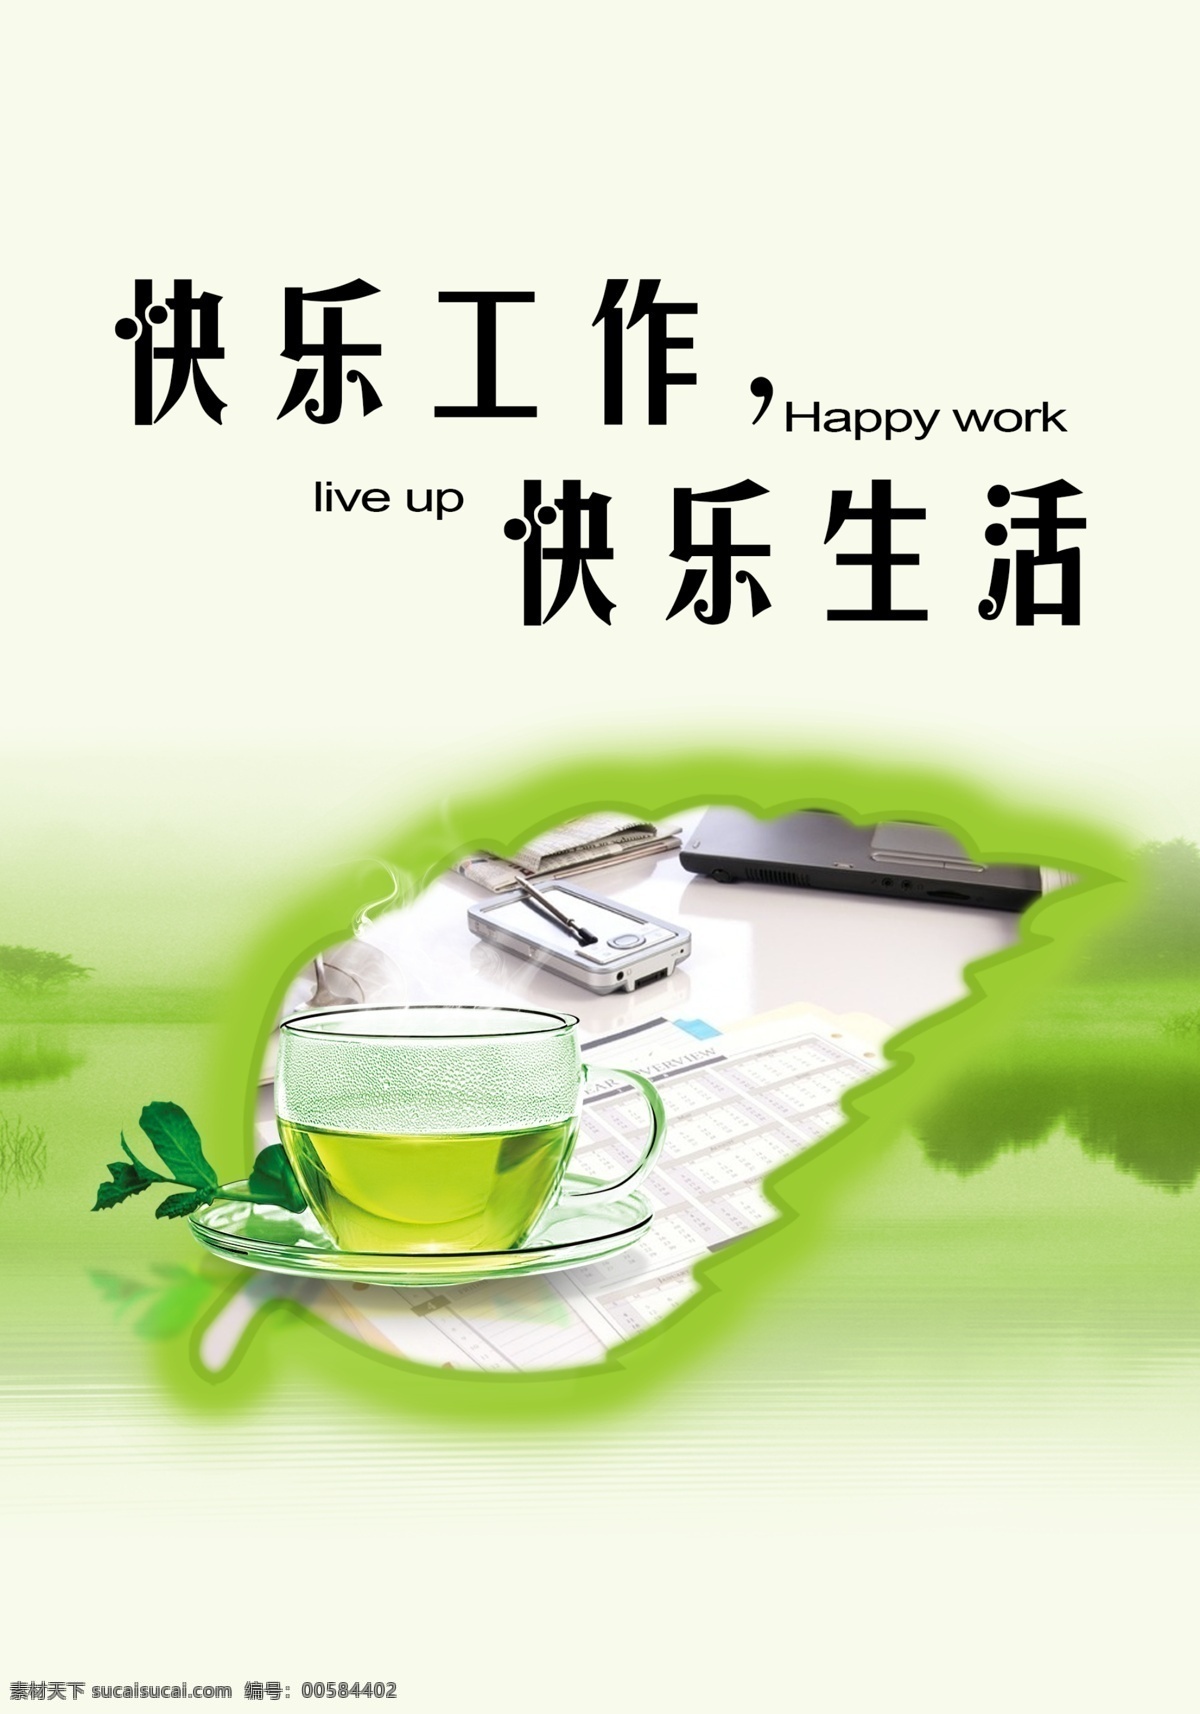 快乐 工作 生活 模版下载 快乐工作 绿色 树叶 山水 绿茶 清新 海报 展板 封面